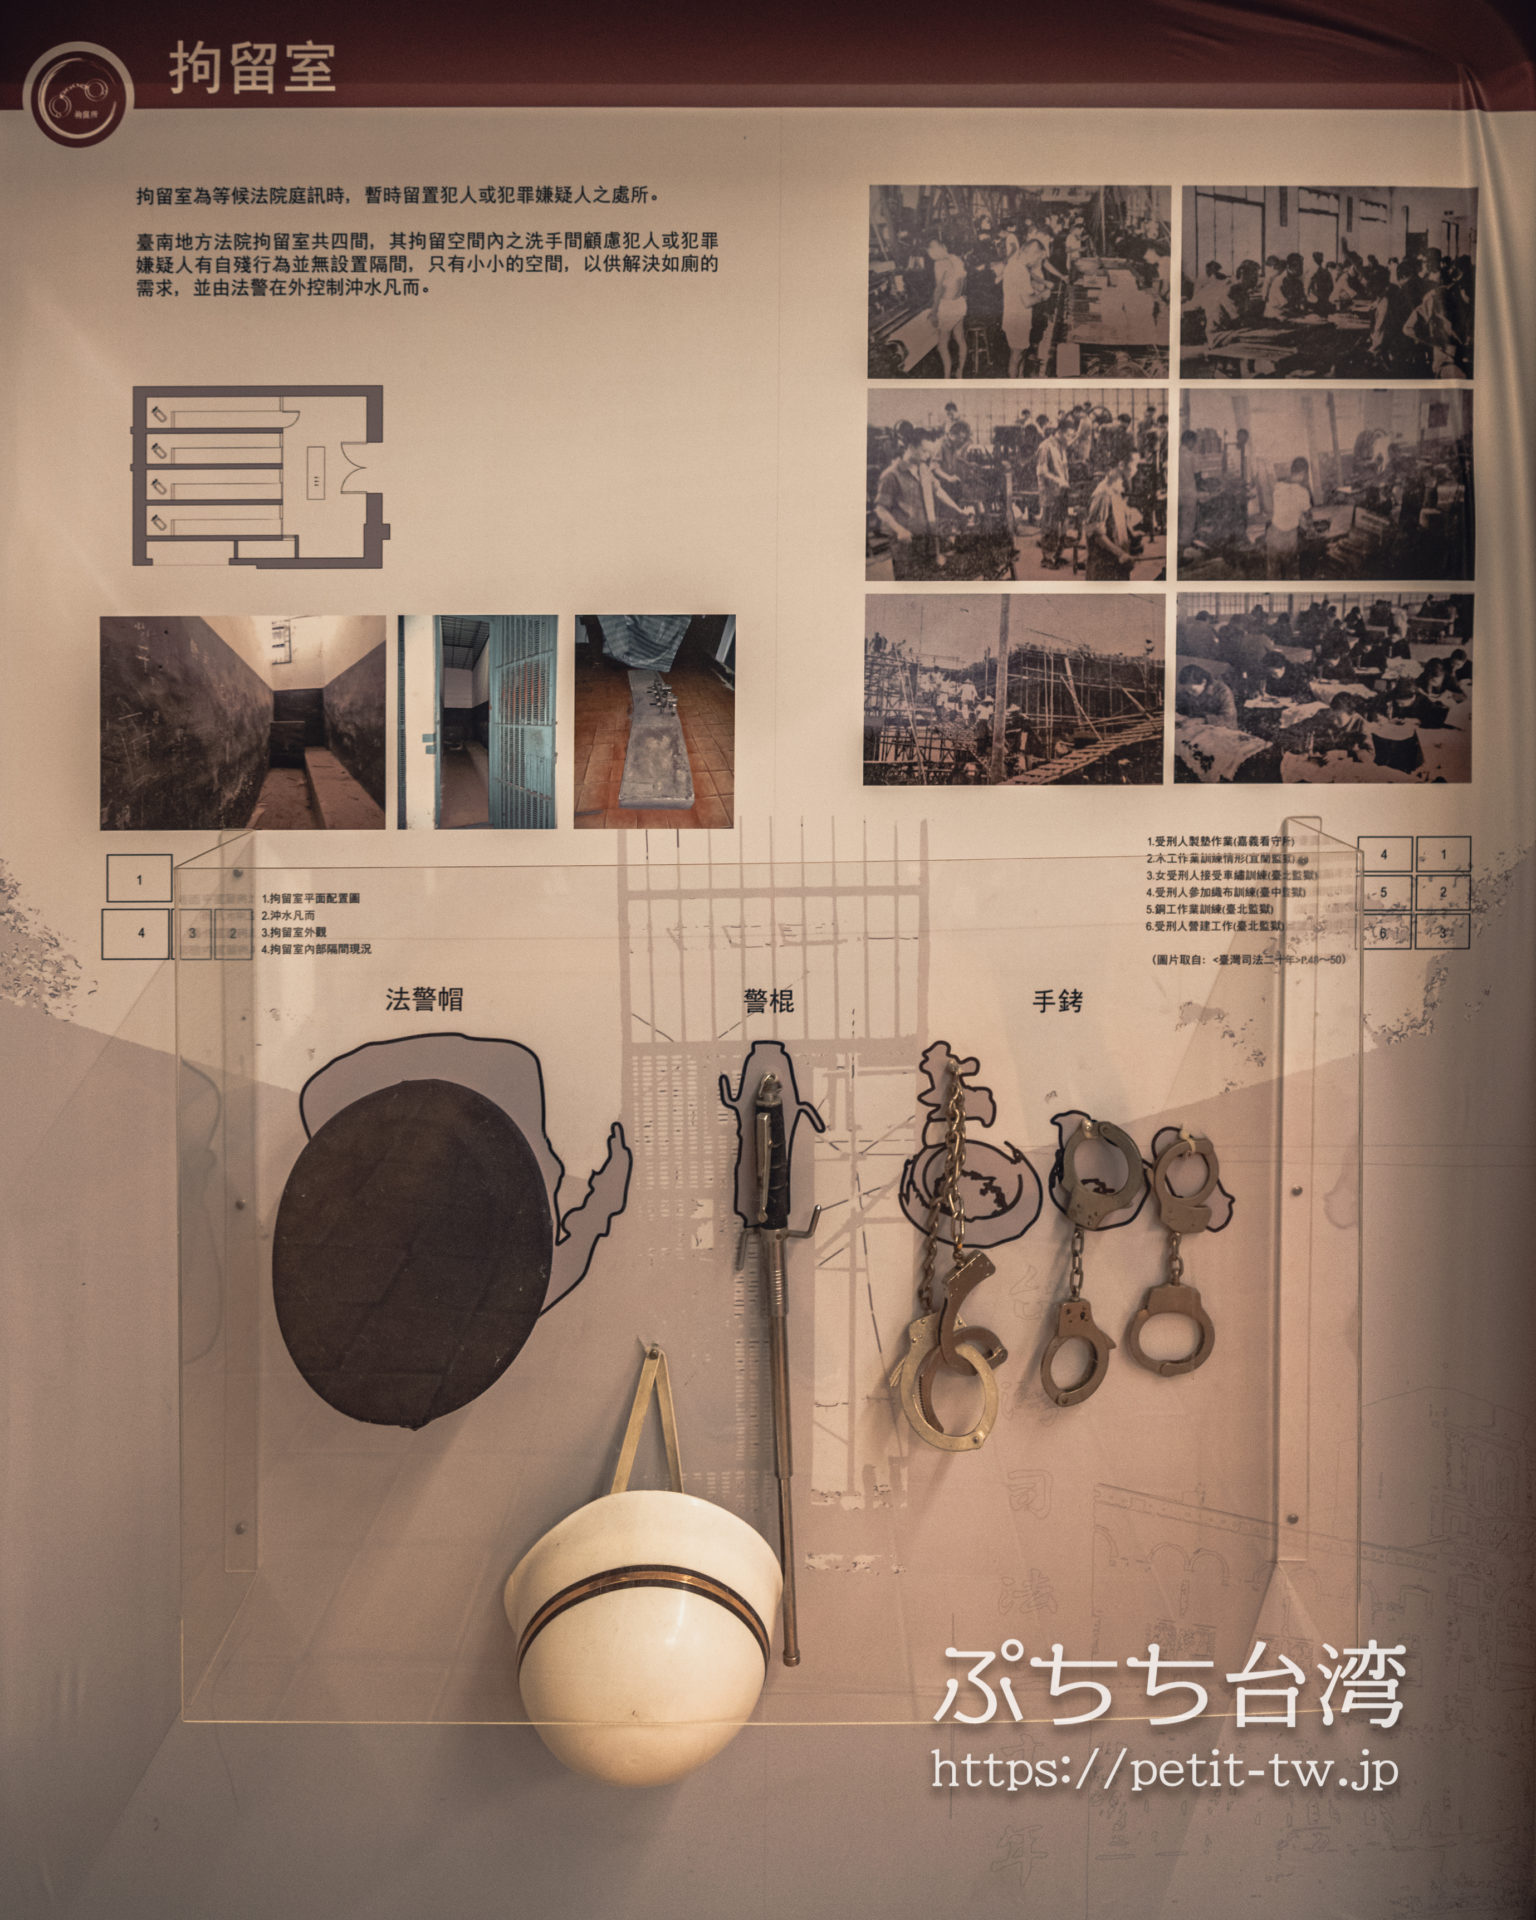 国定古跡台南地方法院（旧台南地方法院）の牢屋の概要説明